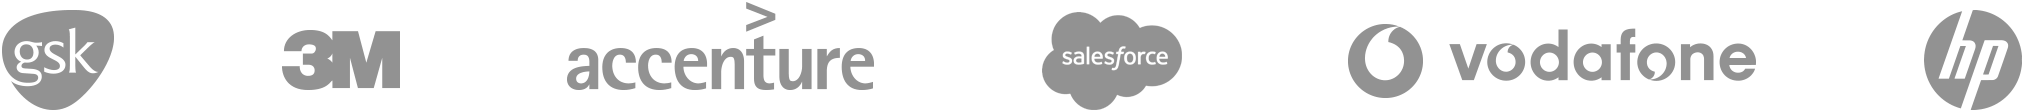 Partner logos image